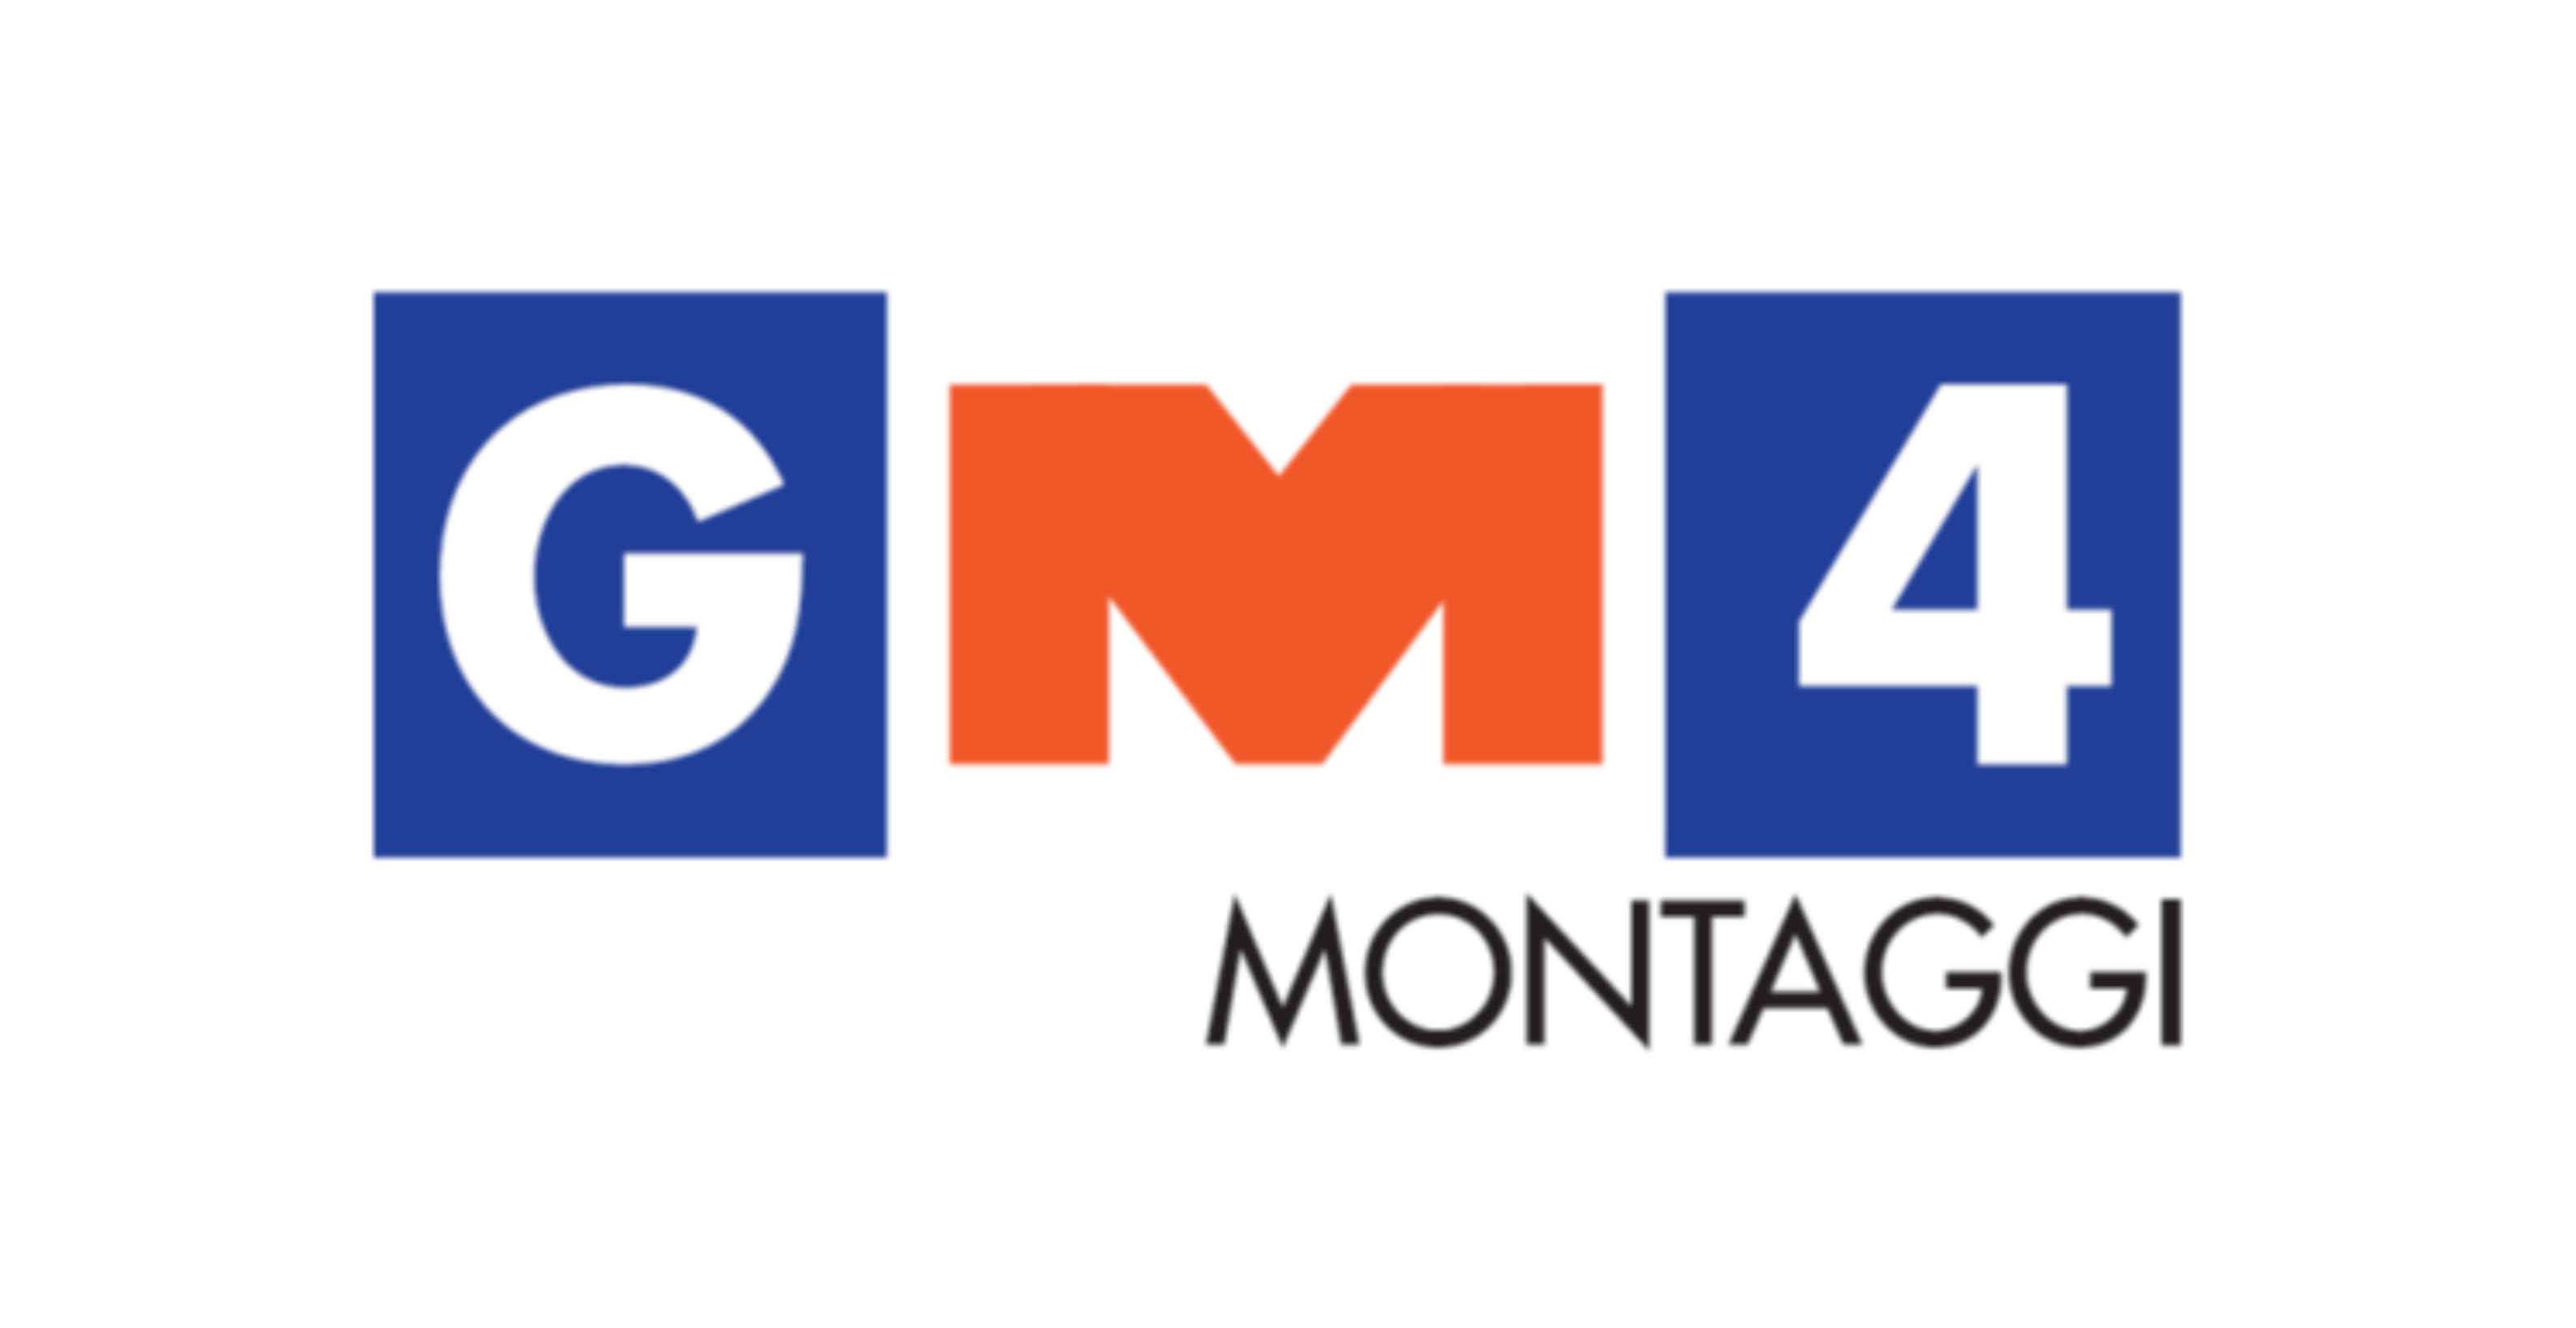 GM4 Montaggi